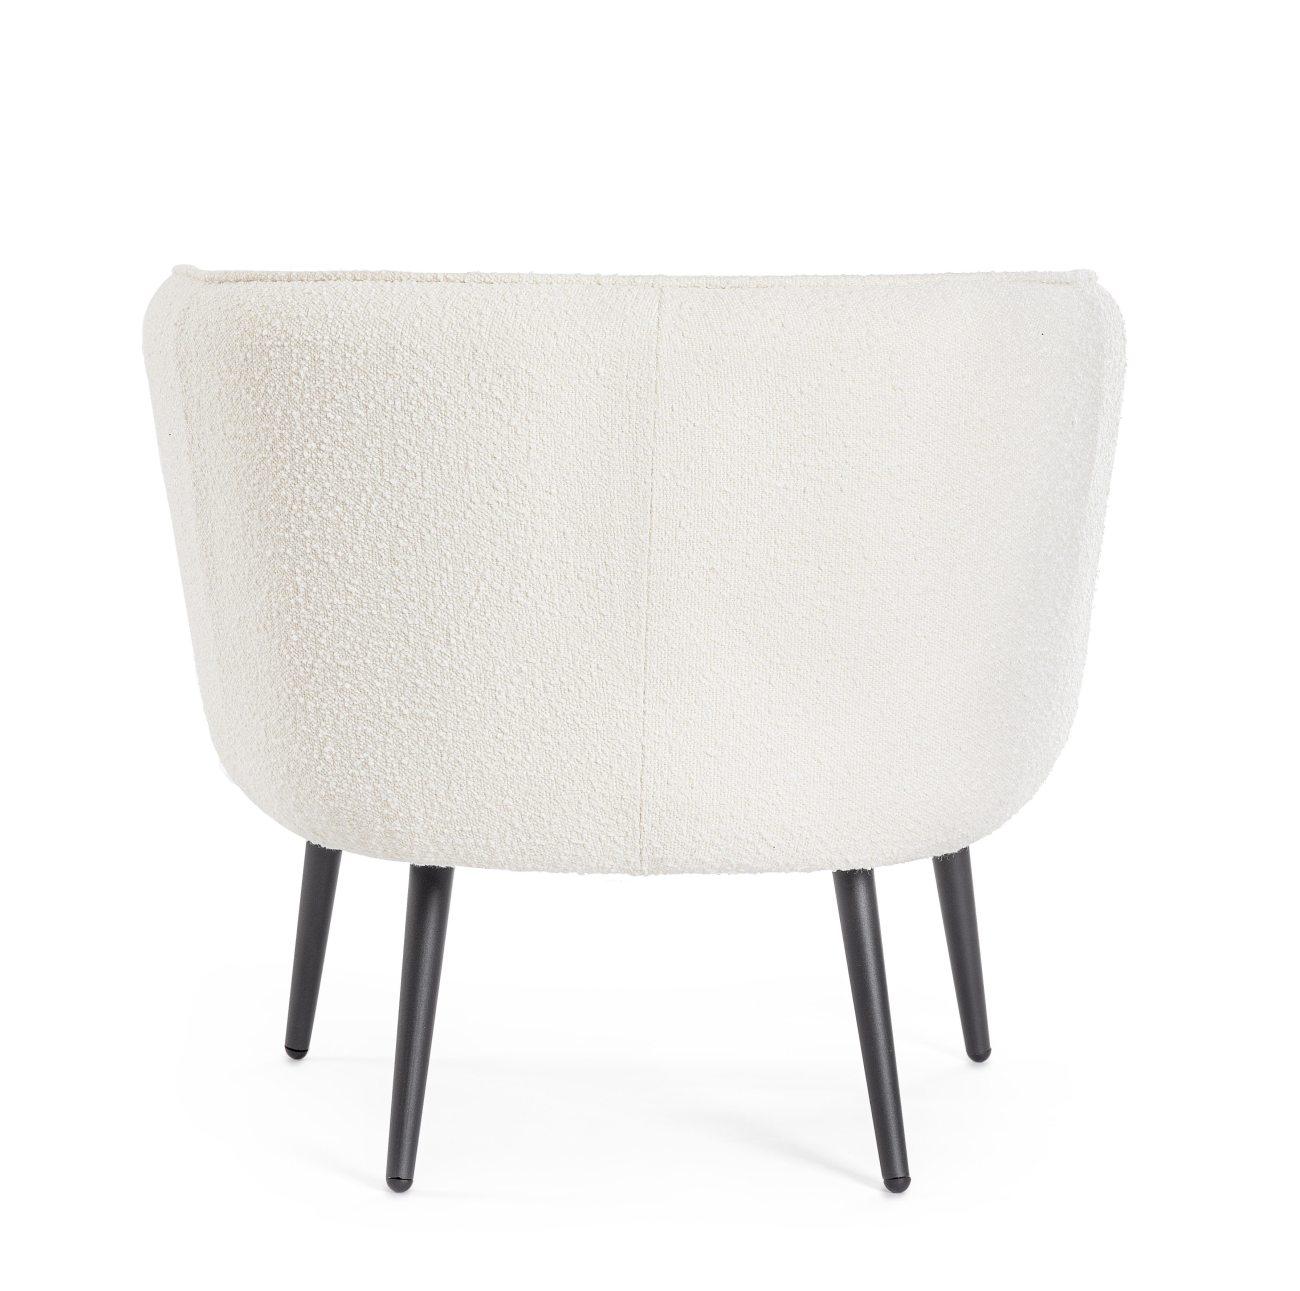 Der Sessel Avril überzeugt mit seinem modernen Stil. Gefertigt wurde er aus Bouclè-Stoff, welcher einen weißen Farbton besitzt. Das Gestell ist aus Metall und hat eine schwarze Farbe. Der Sessel verfügt über eine Armlehne.